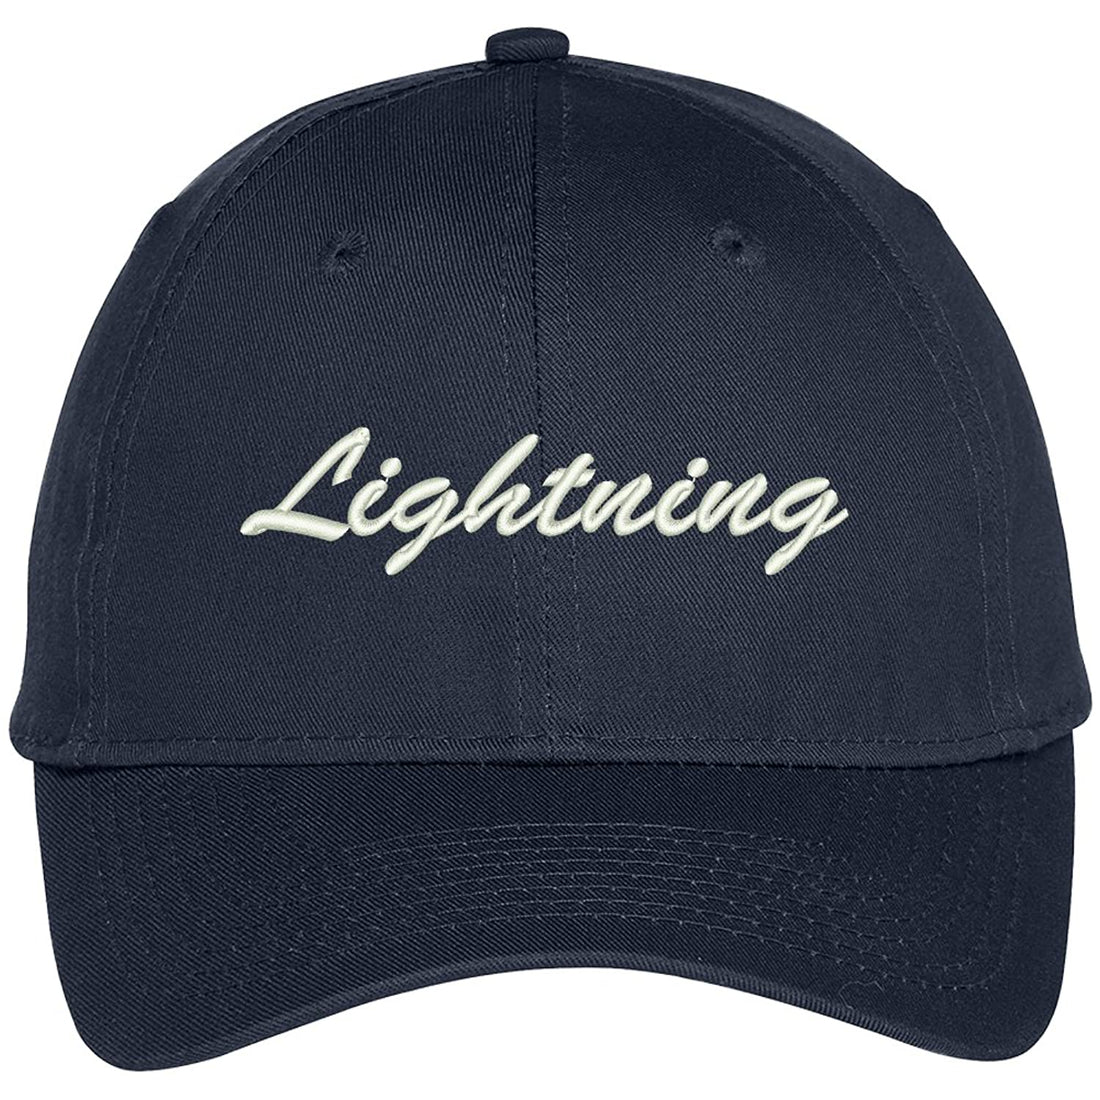 Trendy Apparel Shop Lightning Embroidered Precurved Adjustable Cap